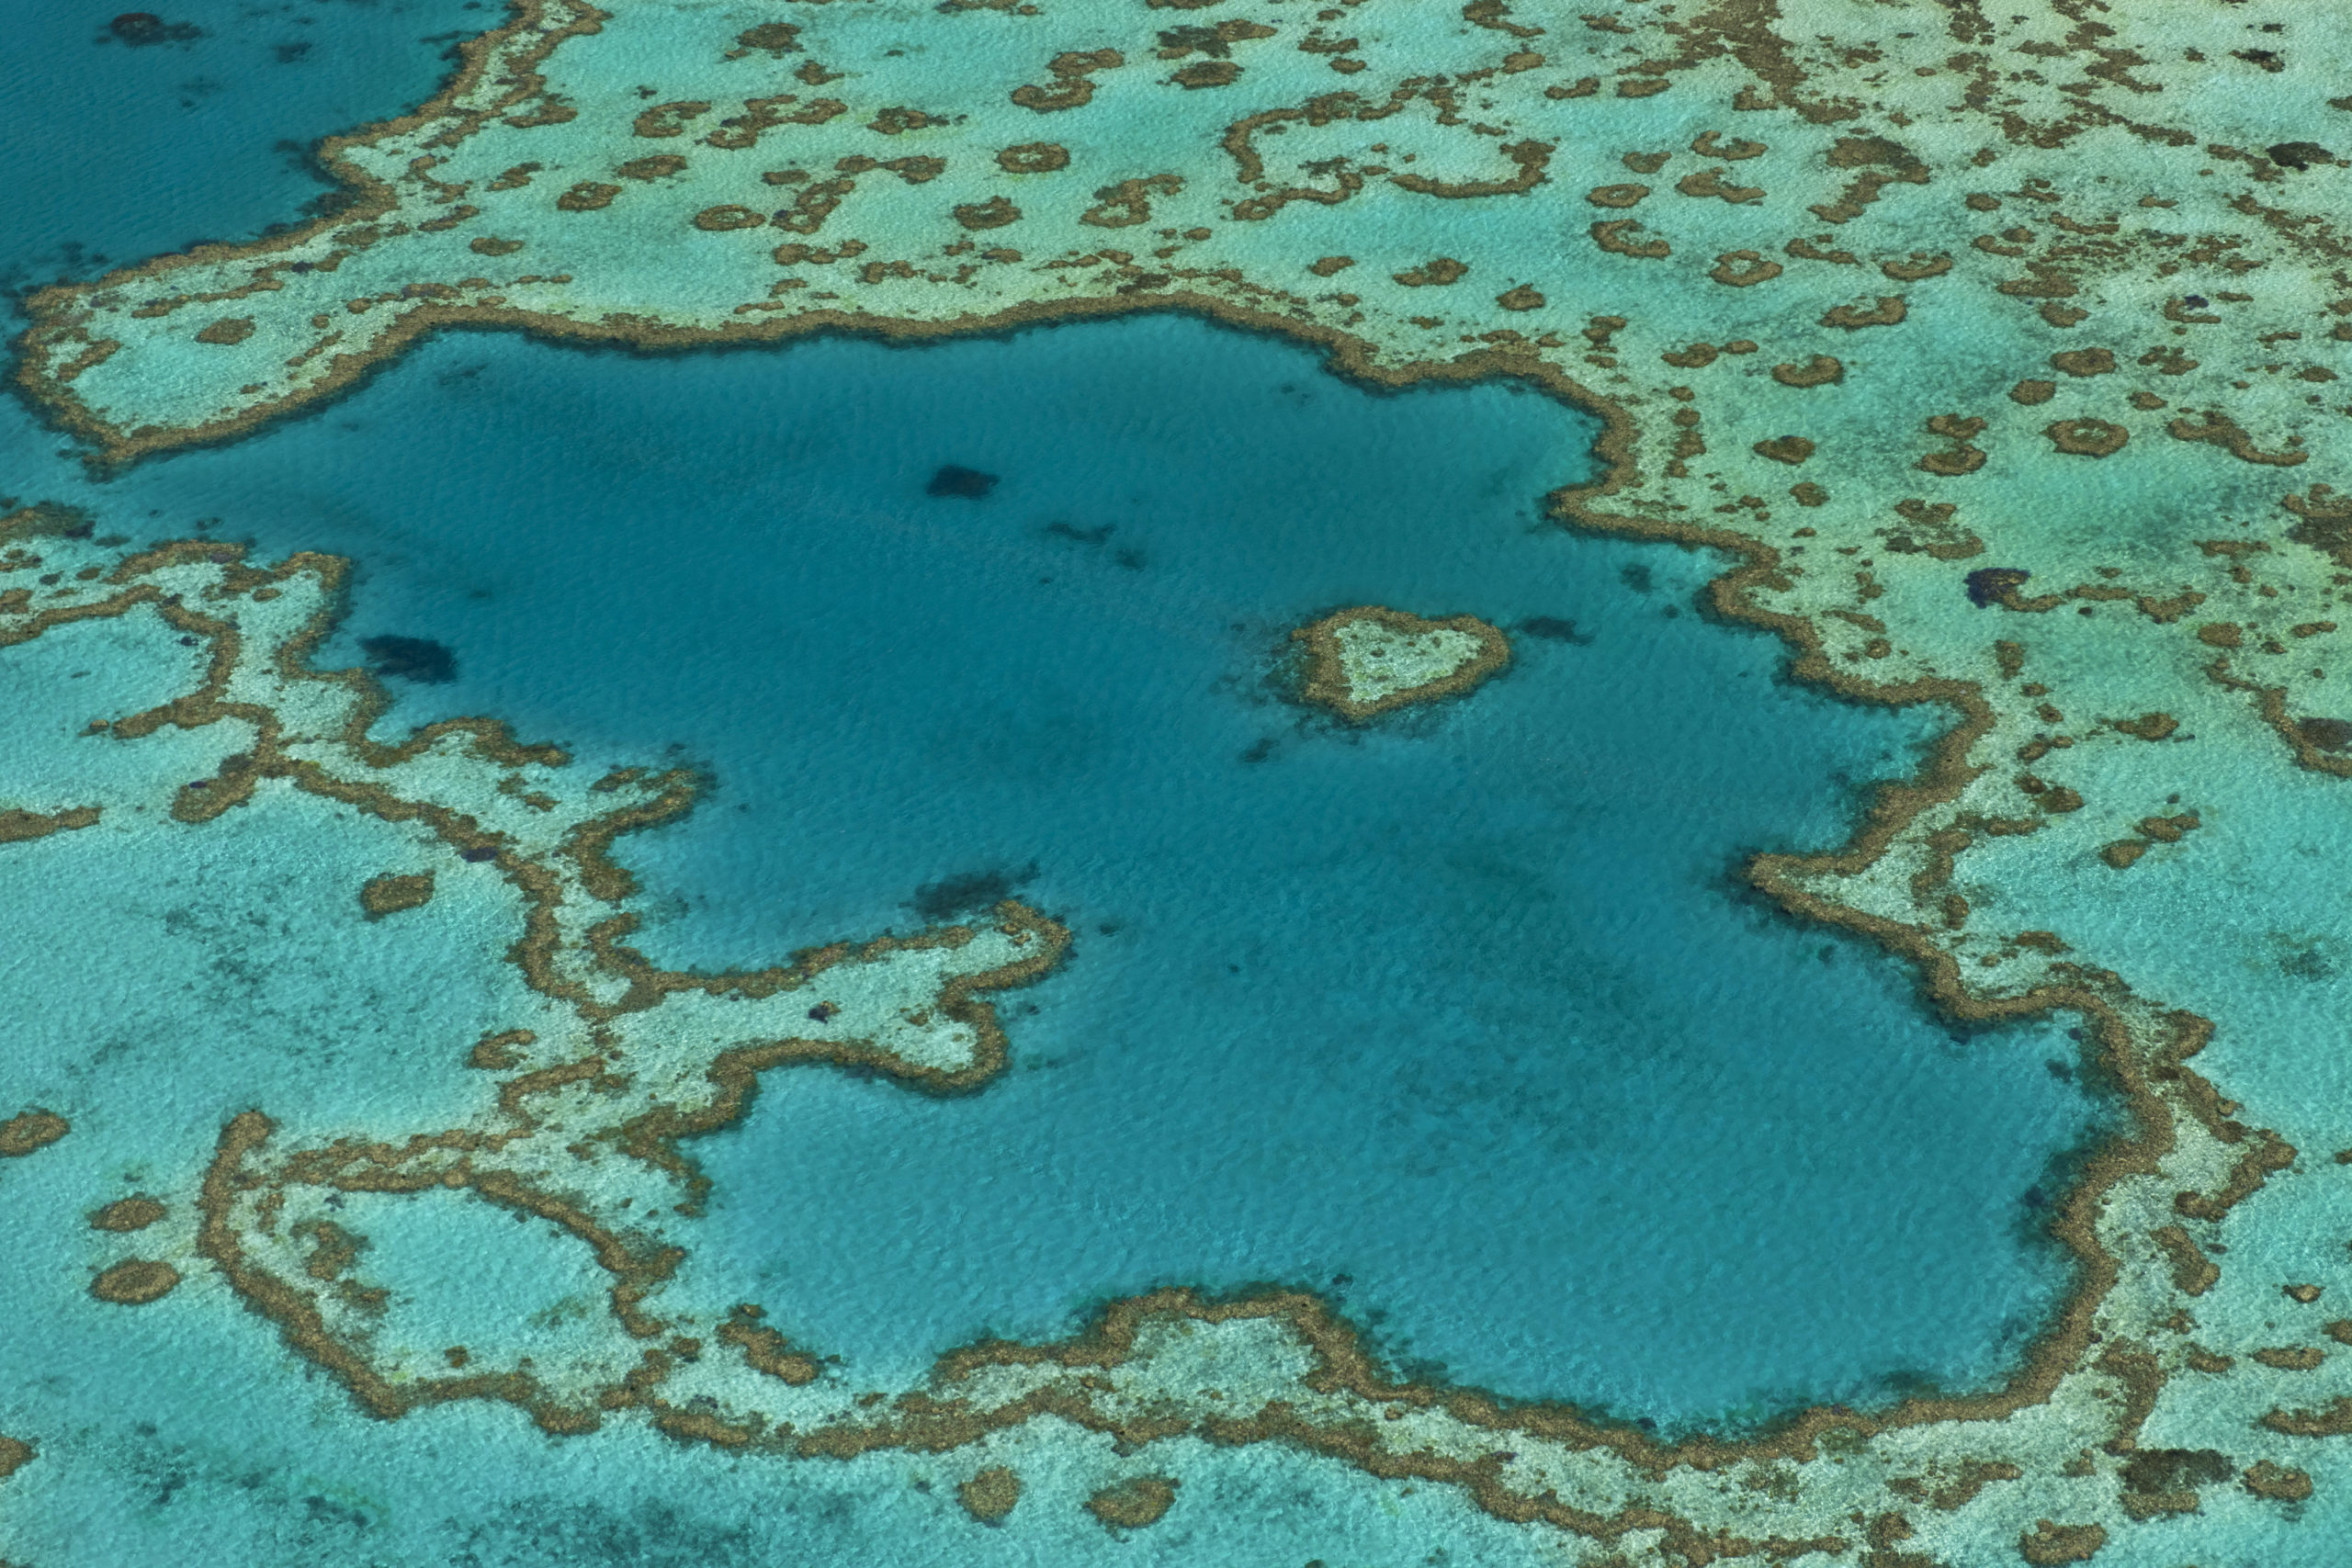 Aerial view of Hardy Reef, Heart Reef, Great Barrier Reef